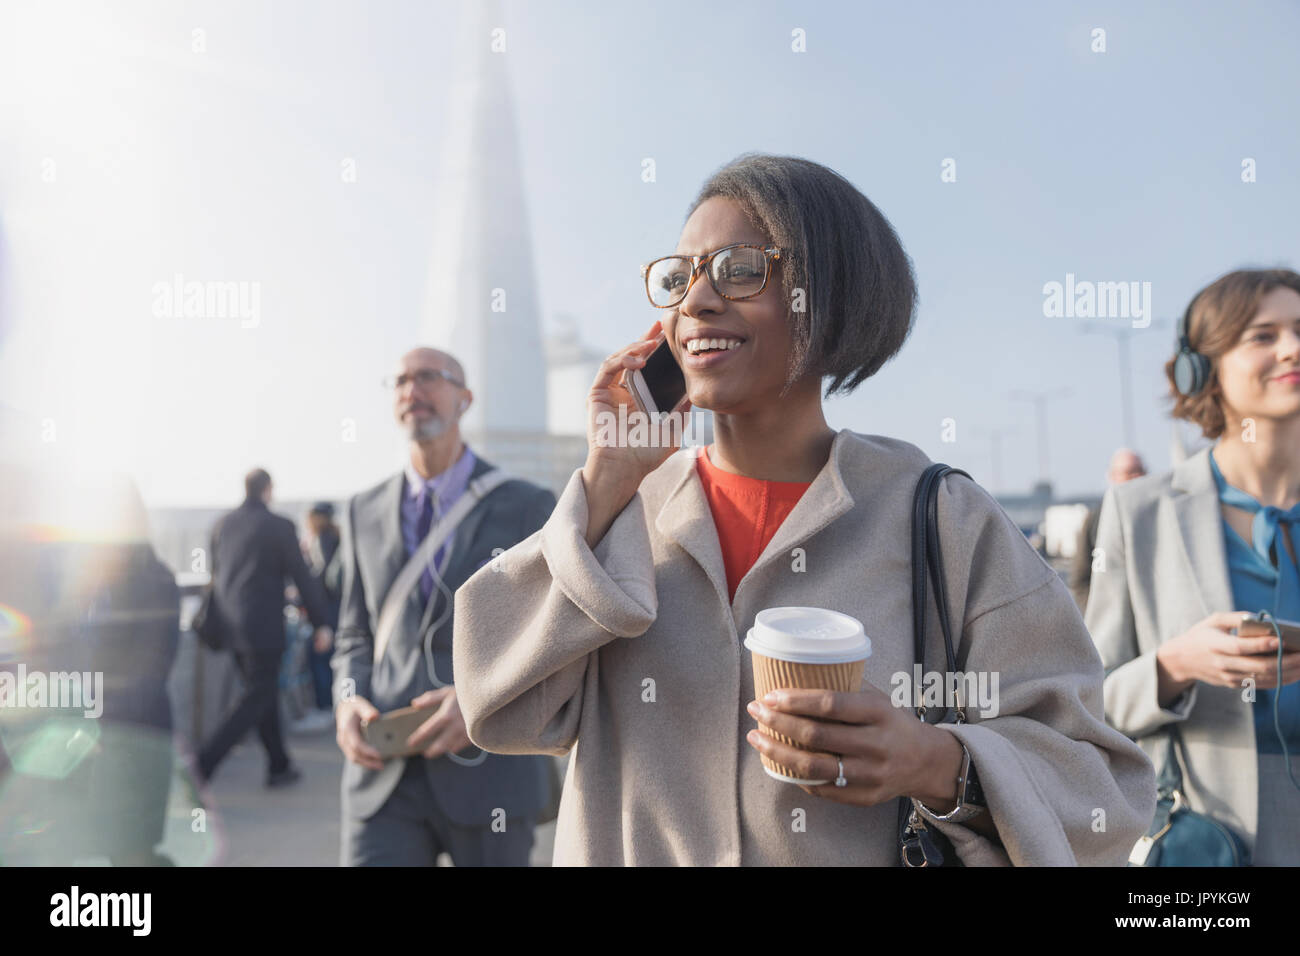 Lächelnd Geschäftsfrau Kaffee trinken und reden über Handy auf sonnigen belebten städtischen Fußgängerbrücke Stockfoto